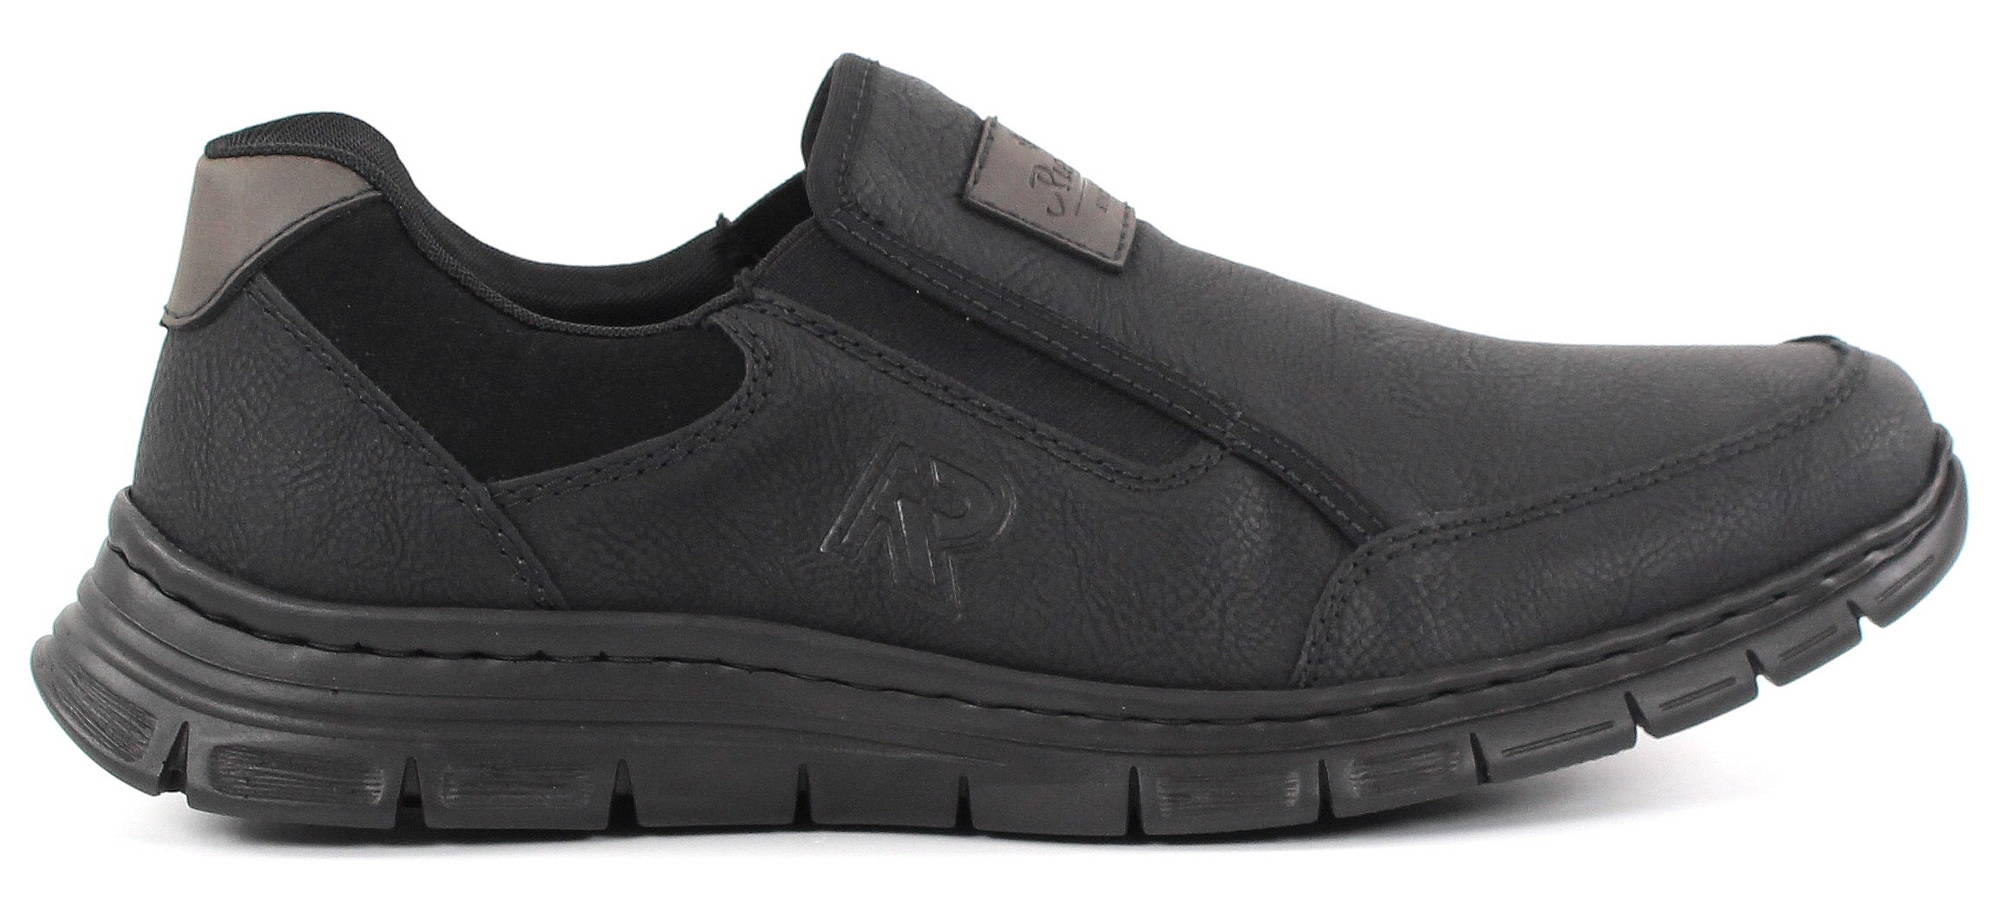 Rieker Walking Shoes B4873-05, Black - Stilettoshop.eu webstore